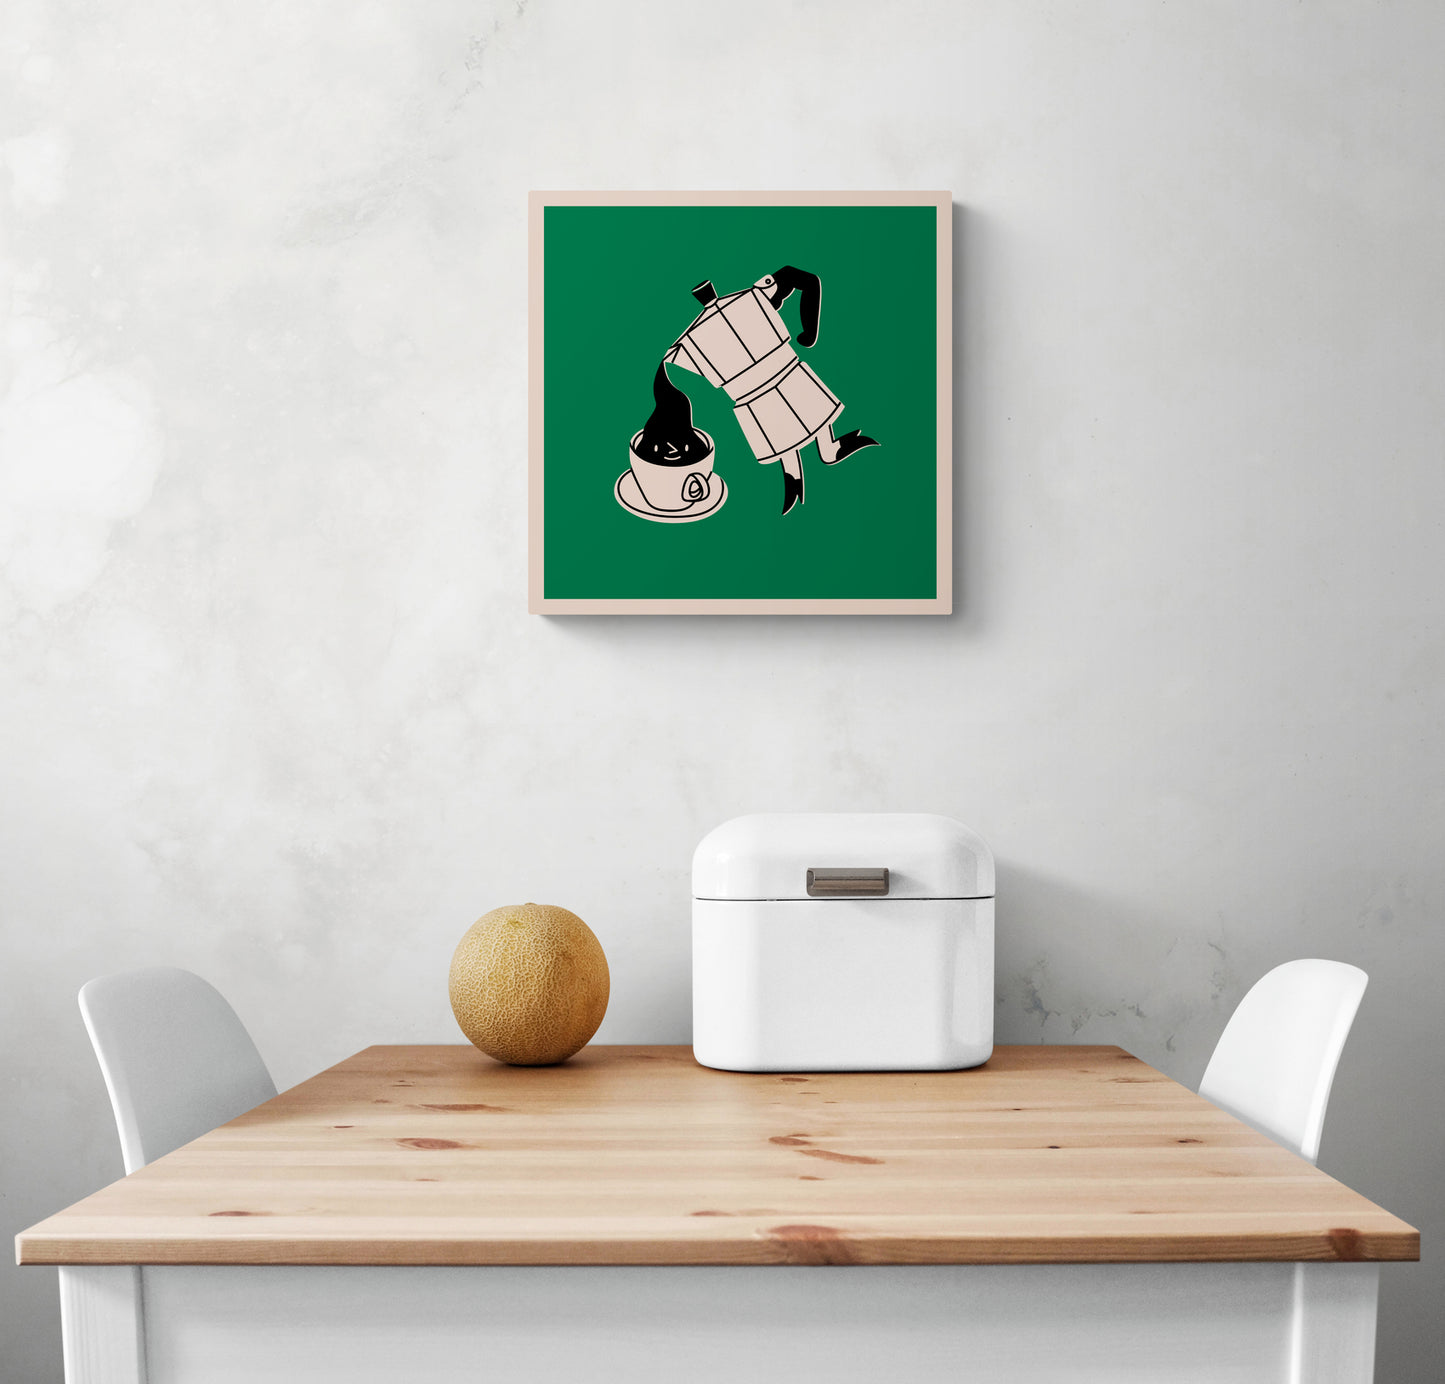 Un tableau de cuisine est accroché sur un mur blanc. Ce tableau est placé au-dessus d'une table en bois et deux chaises sont de chaque côté. Une boîte à pain en métal blanc et un melon sont sur la table